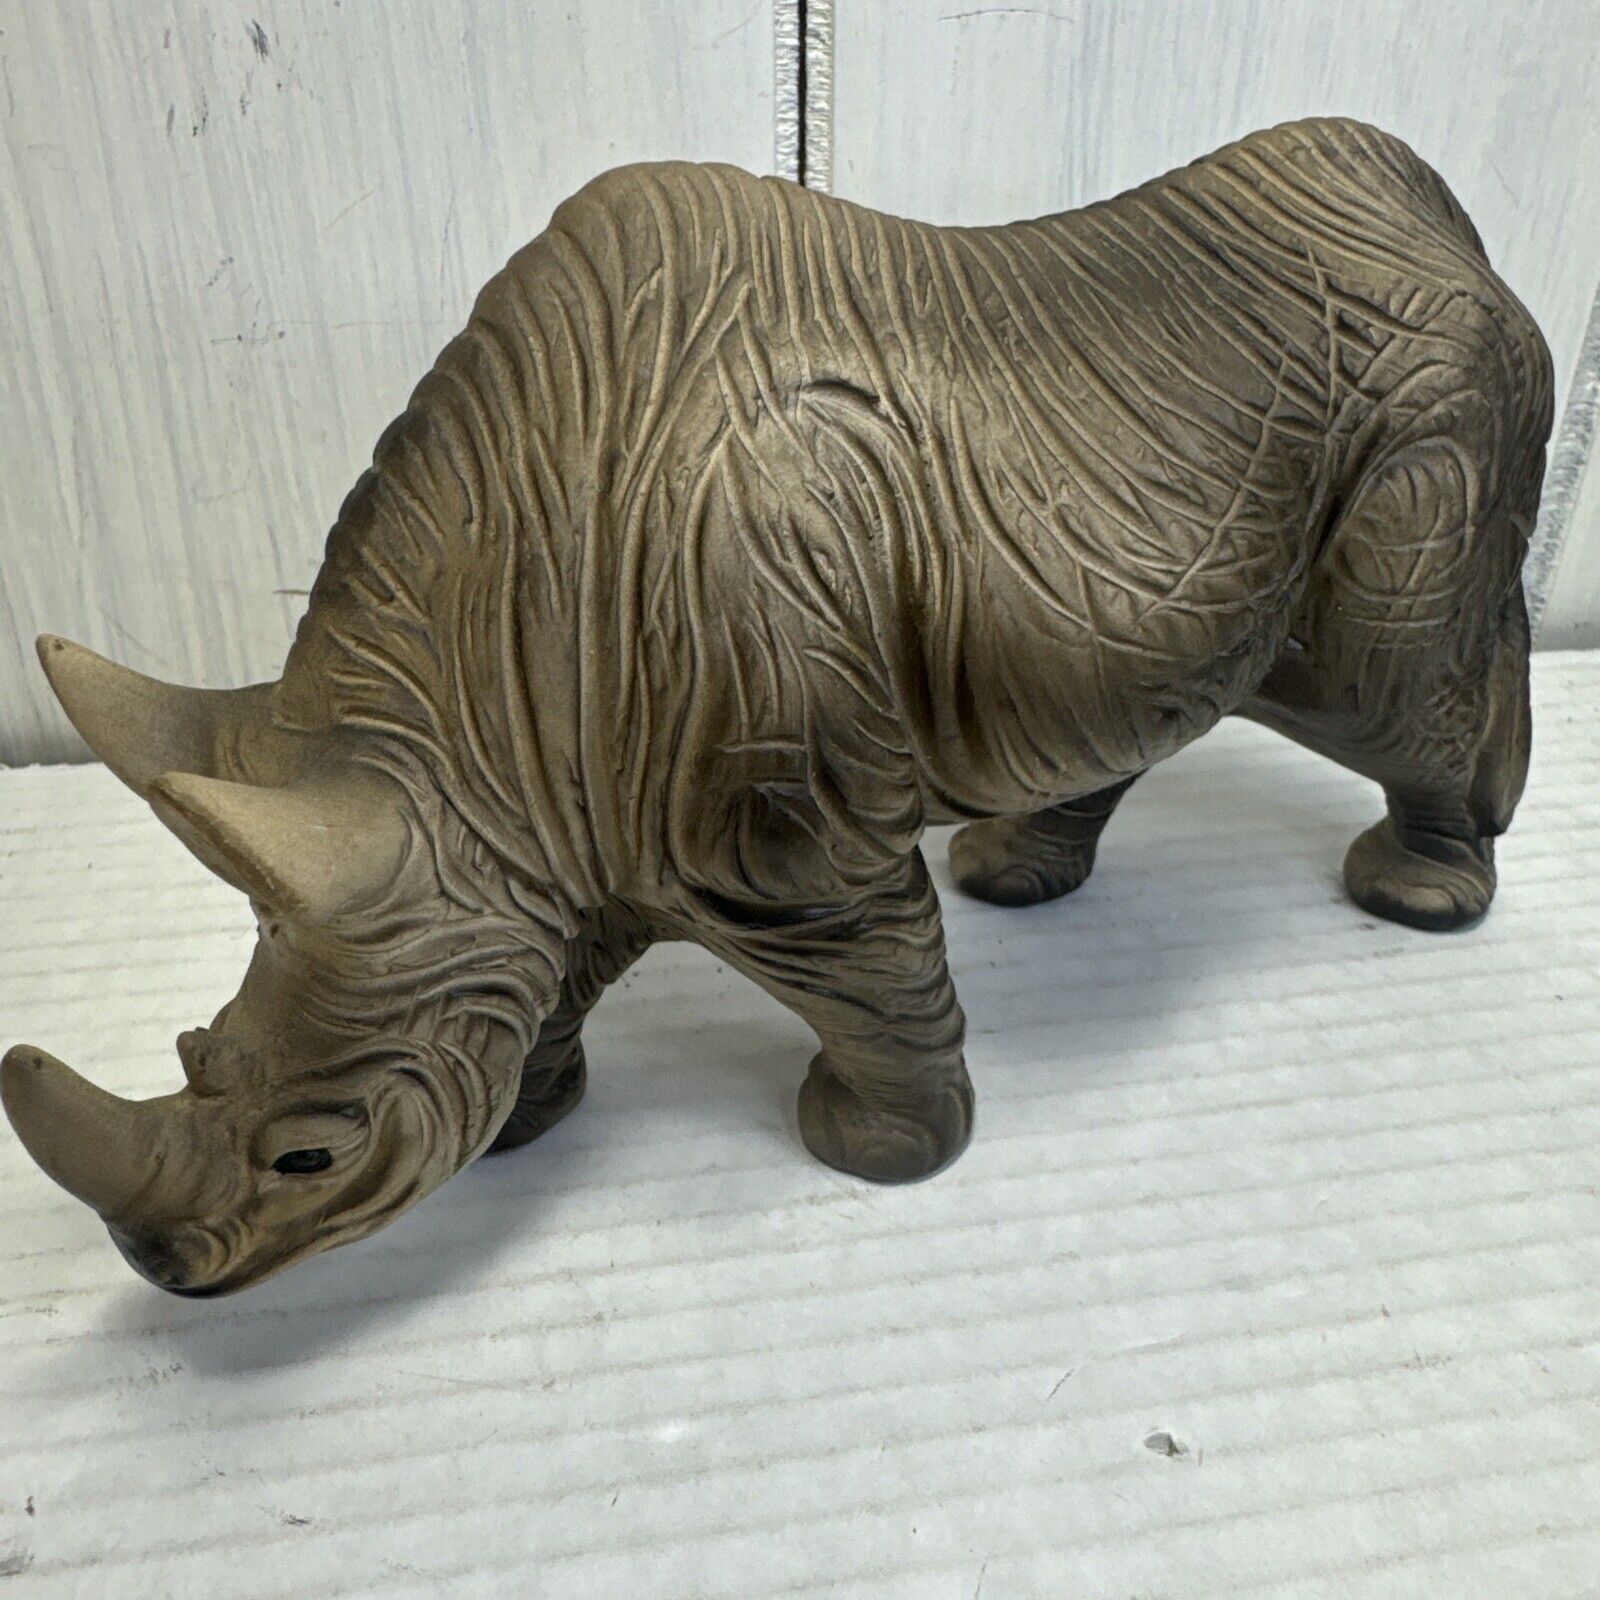 Vintage 7 3/4” Long Ceramic Rhinoceros Animal Figure Made In Japan Wildlife